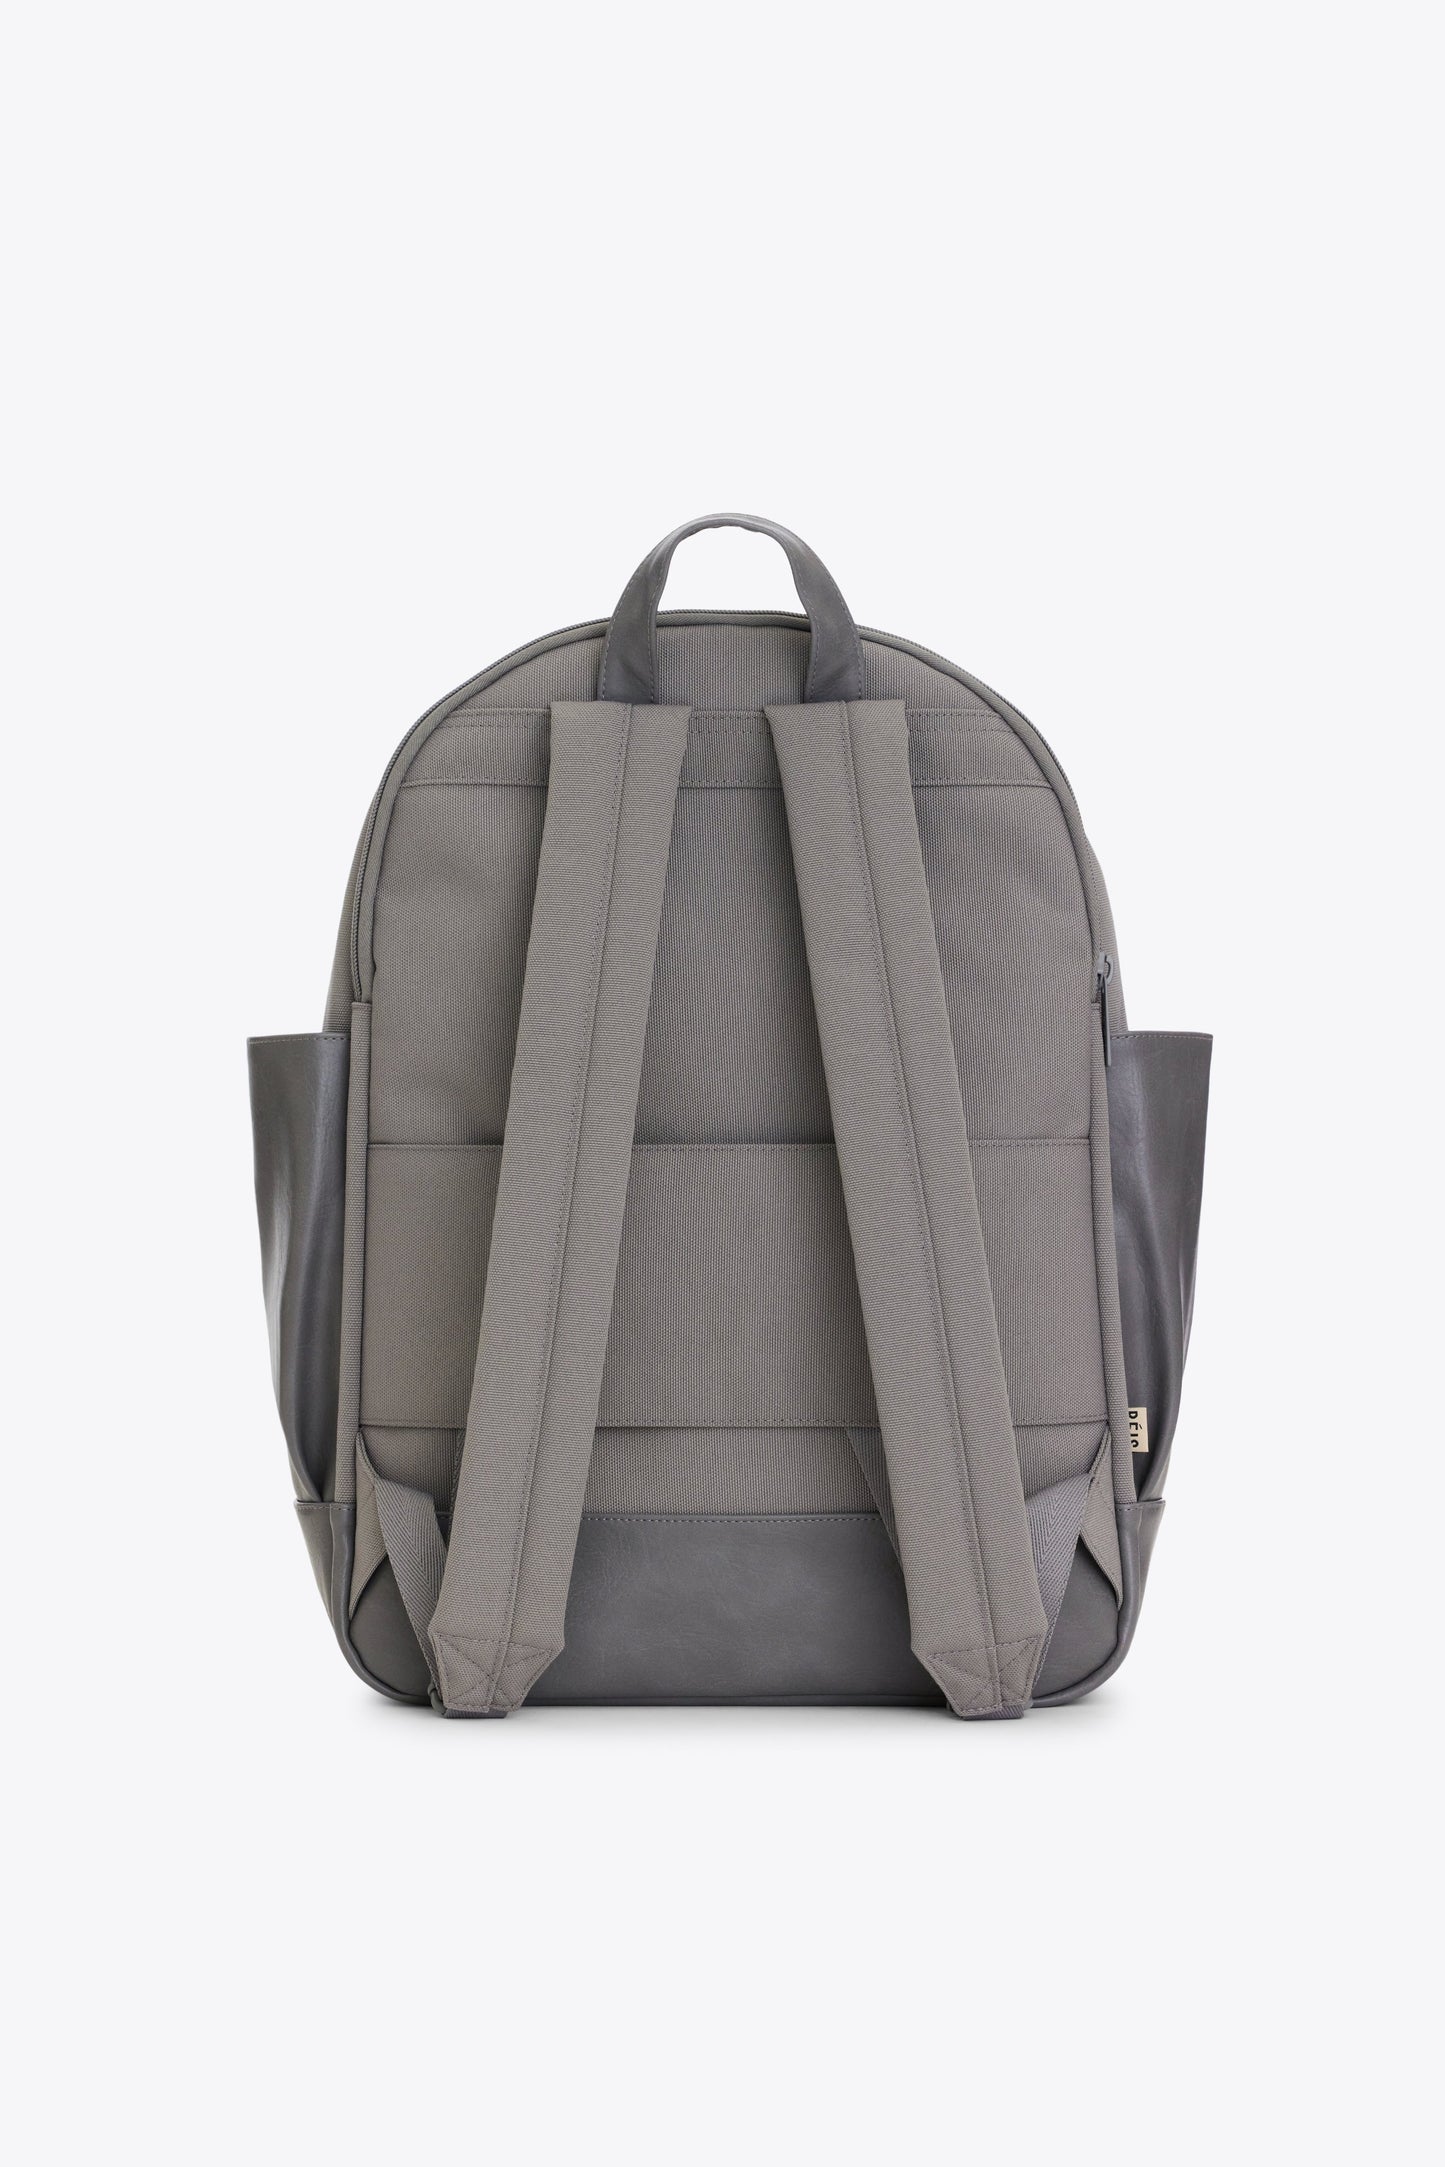 Le sac à dos en gris